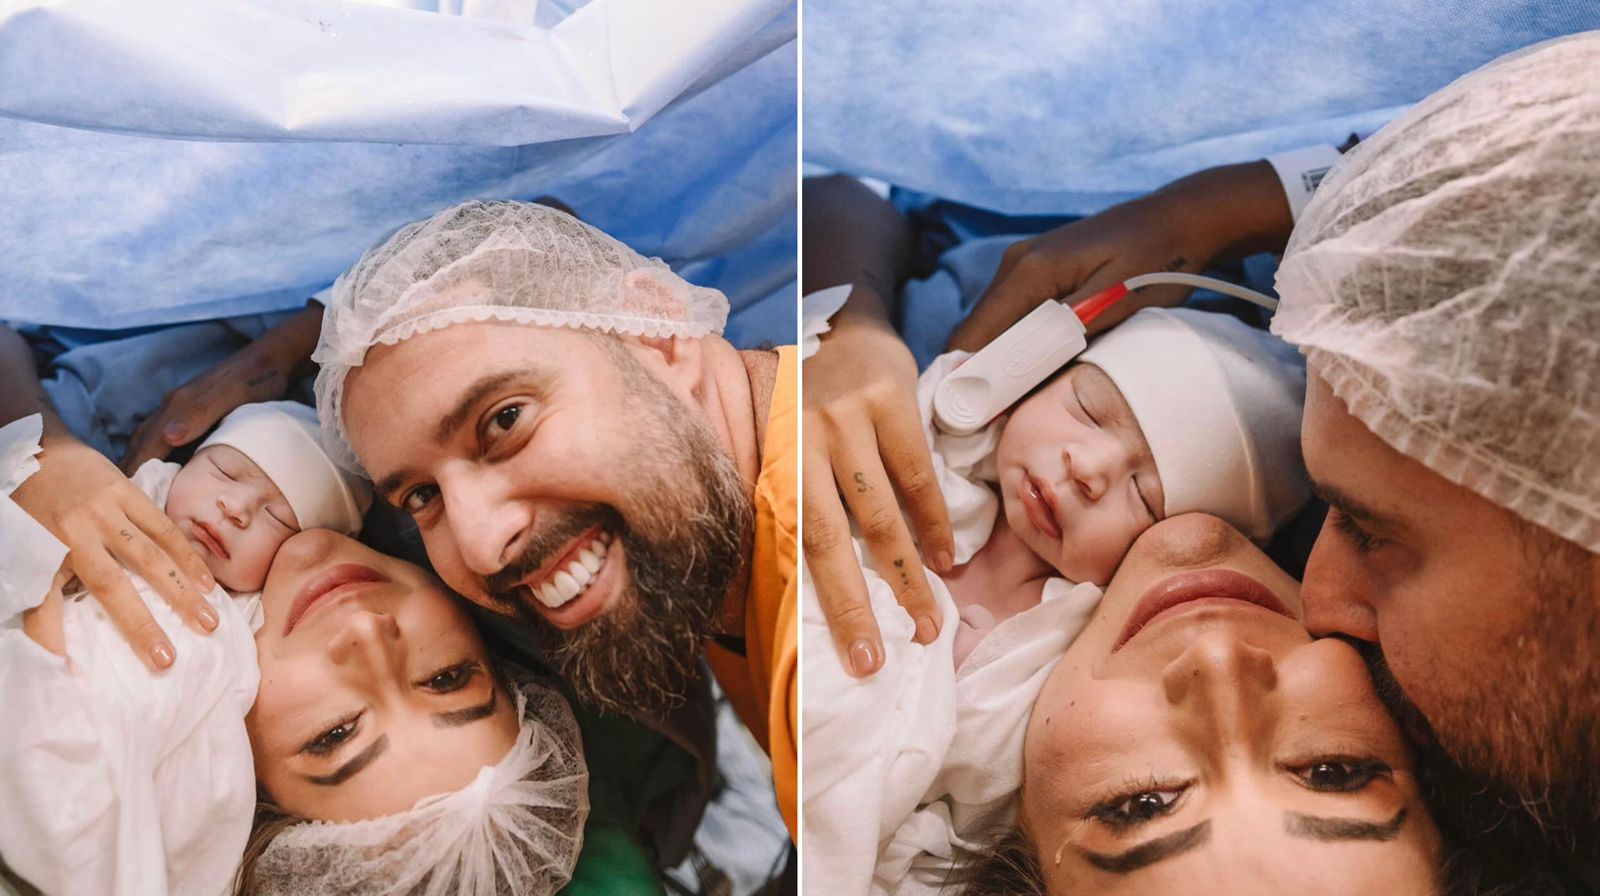 Fabiola Melo dá à luz o primeiro filho após 3 abortos espontâneos: “Deus faz milagre” 